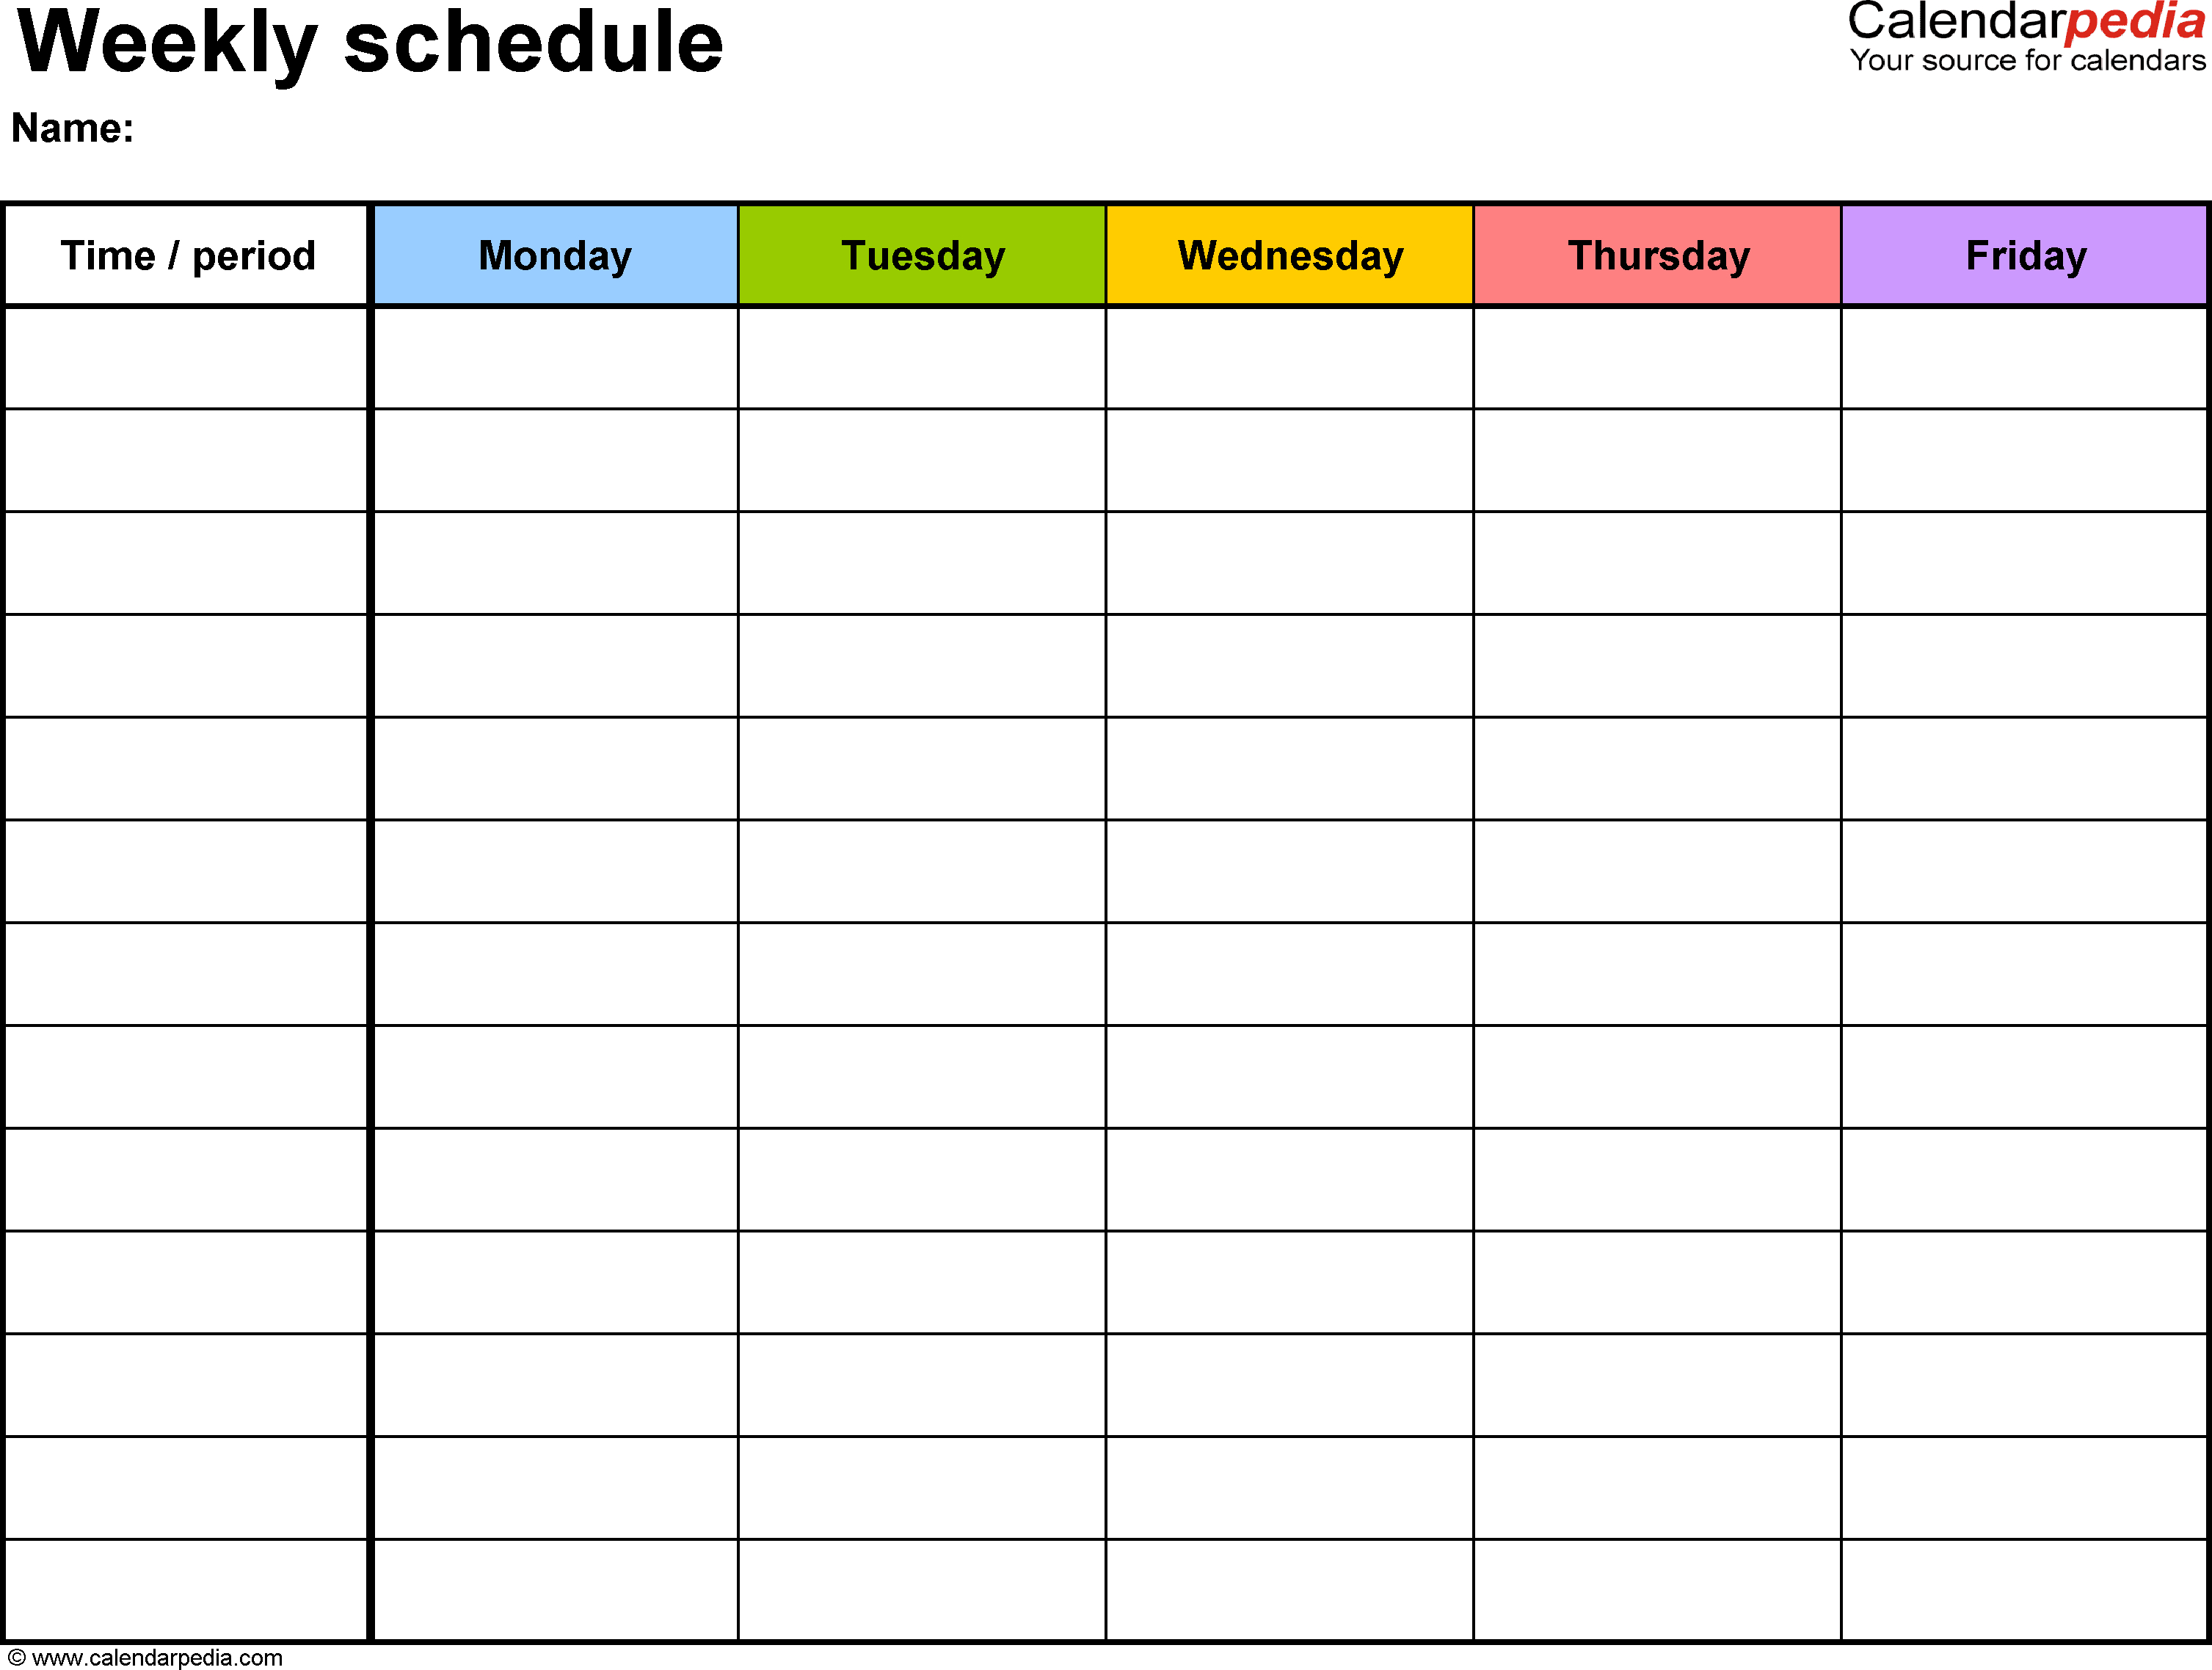 Calendar Plate Google Docs Week Excel Pdf Weekly Weekday